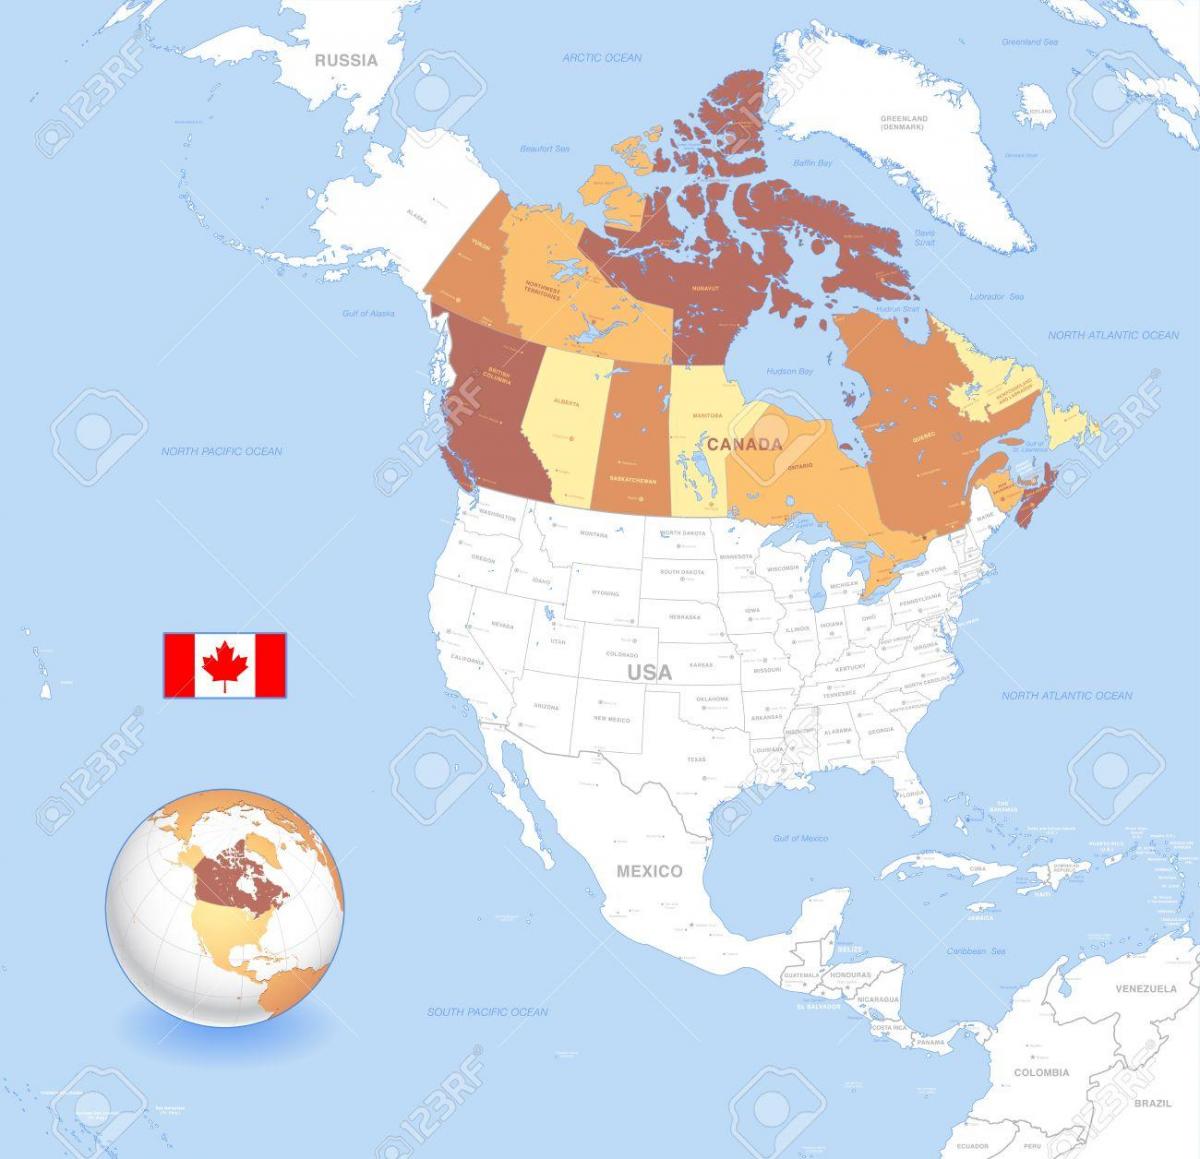 Kanada globe map